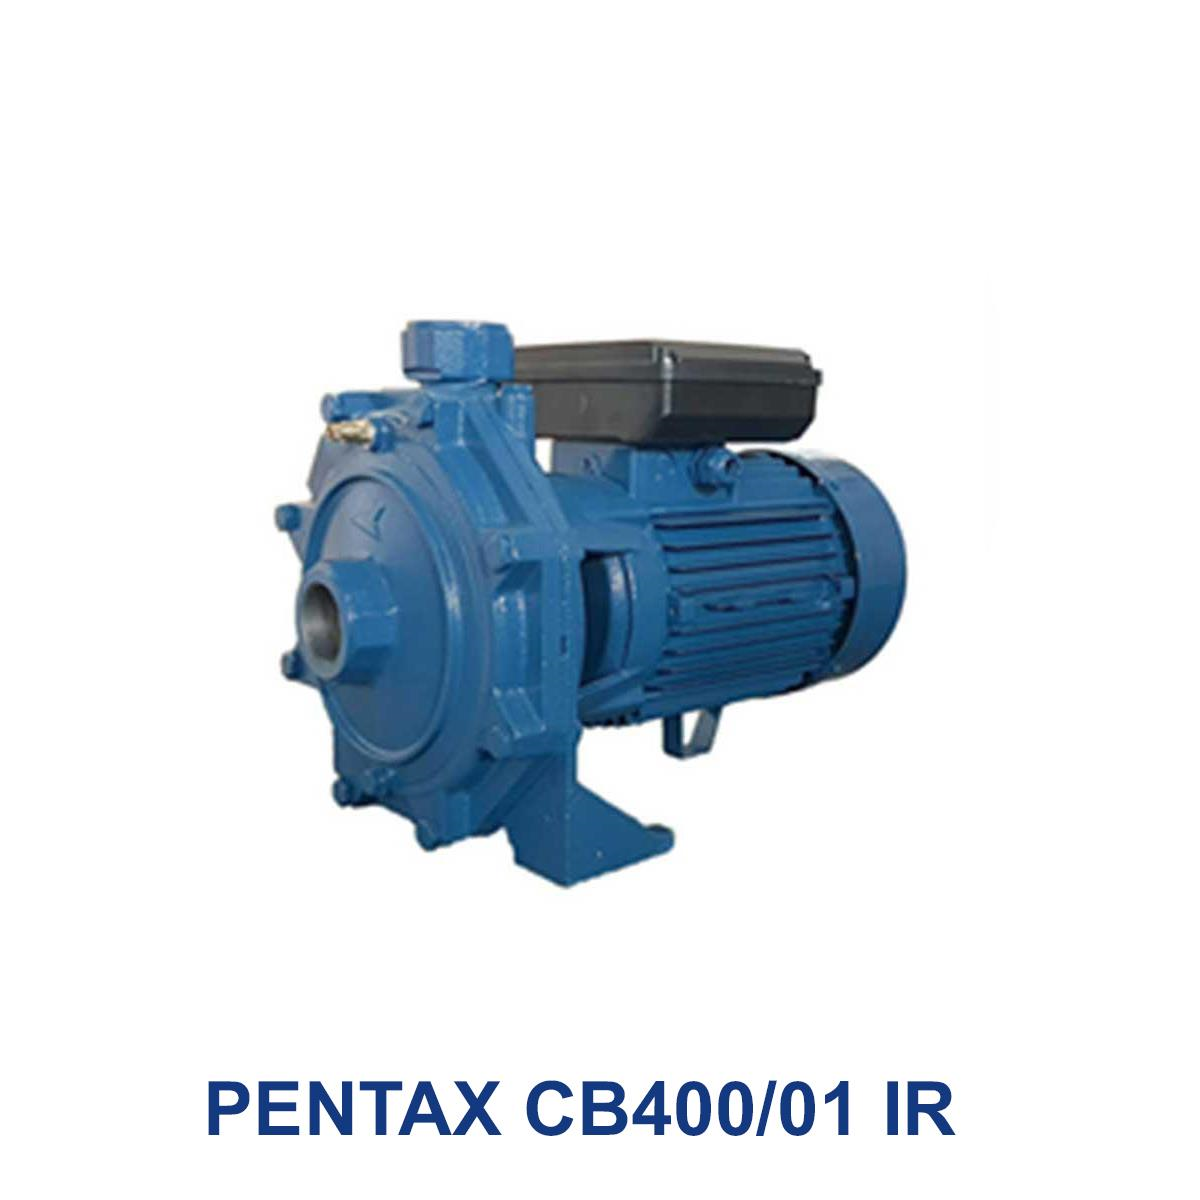 PENTAX-CB400-01-IR